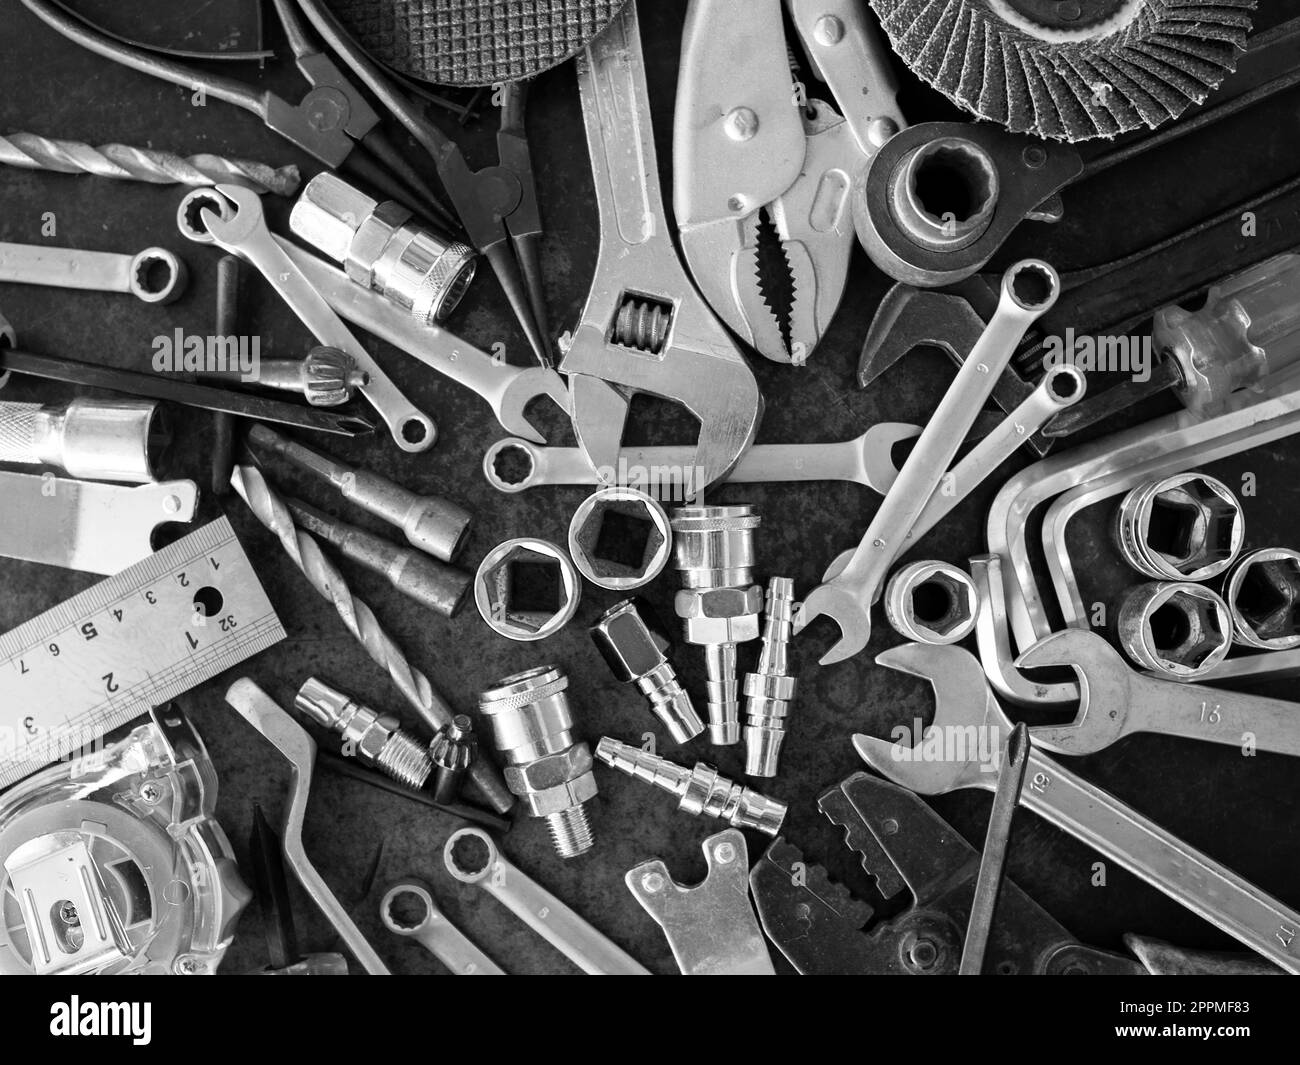 Outils à main composés de clés, pinces, clés à douille, disposés sur l'arrière-plan de l'ancienne plaque d'acier. Banque D'Images